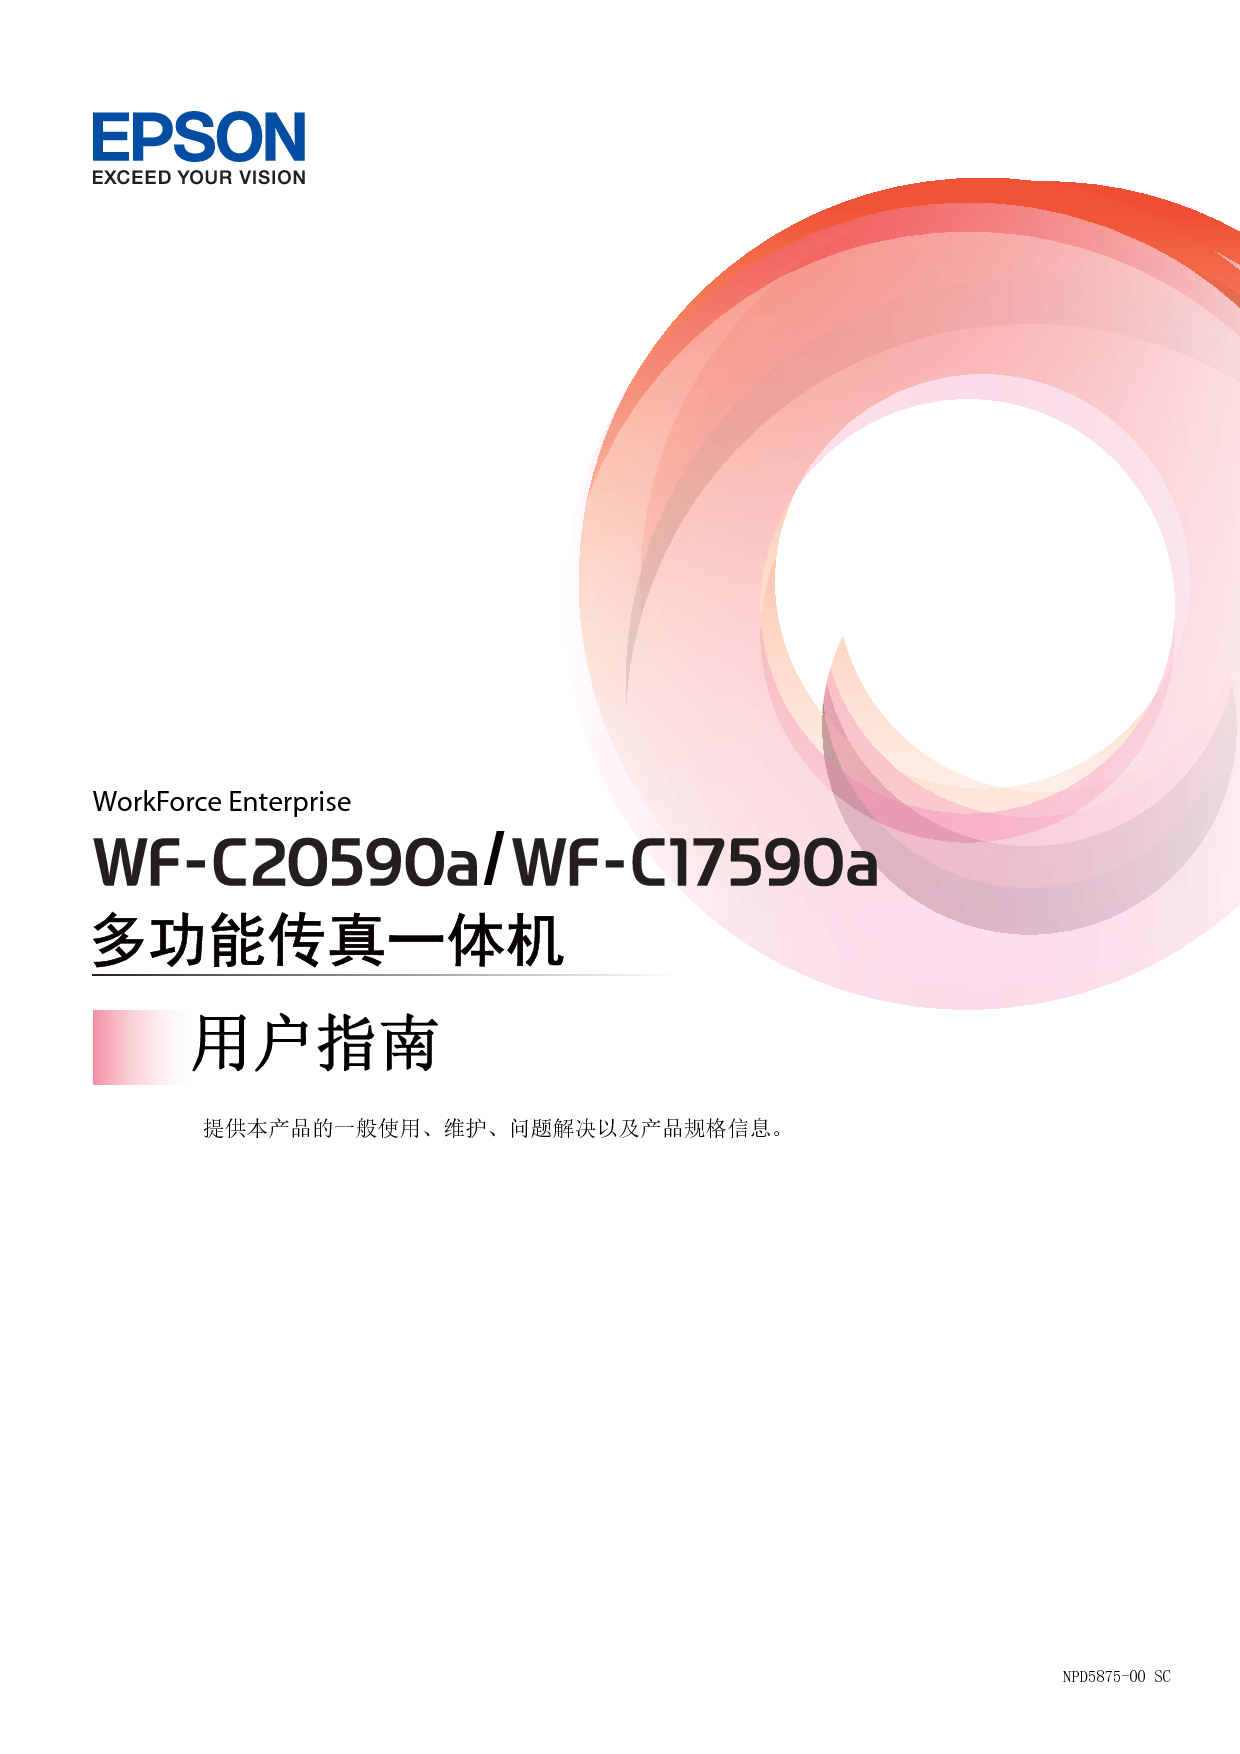 爱普生 Epson WF-C17590A 用户指南 封面